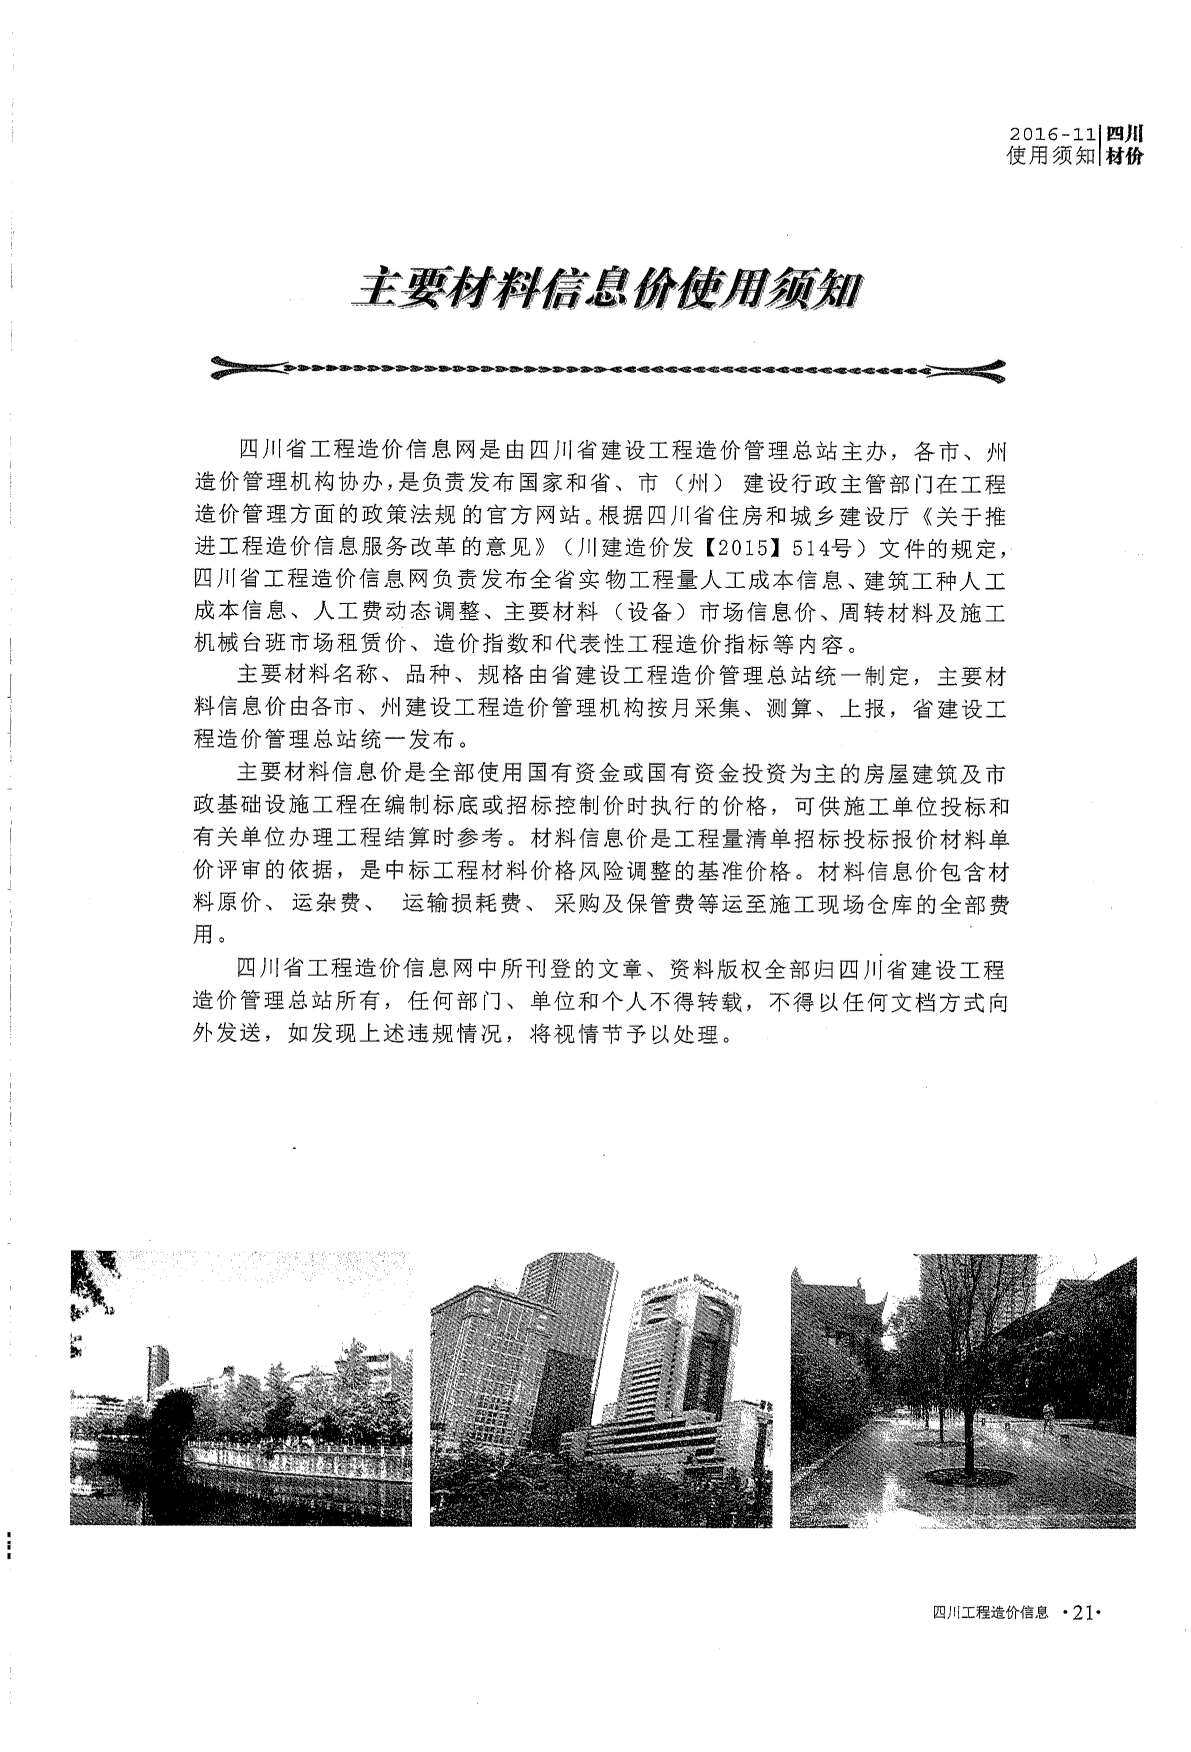 四川省2016年11月工程造价信息期刊